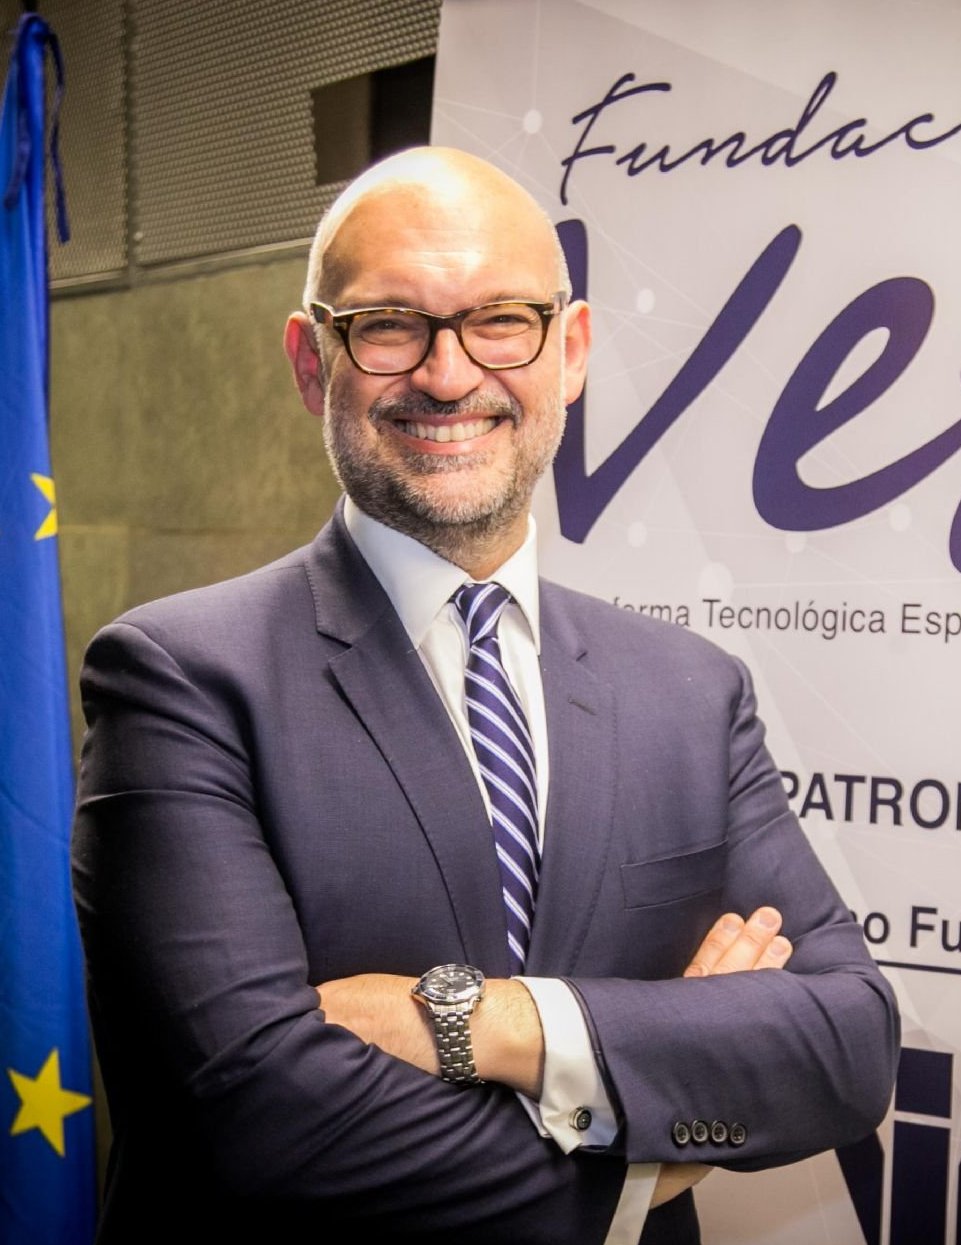 Santiago de Andrés, Presidente de la Fundación Vet+i